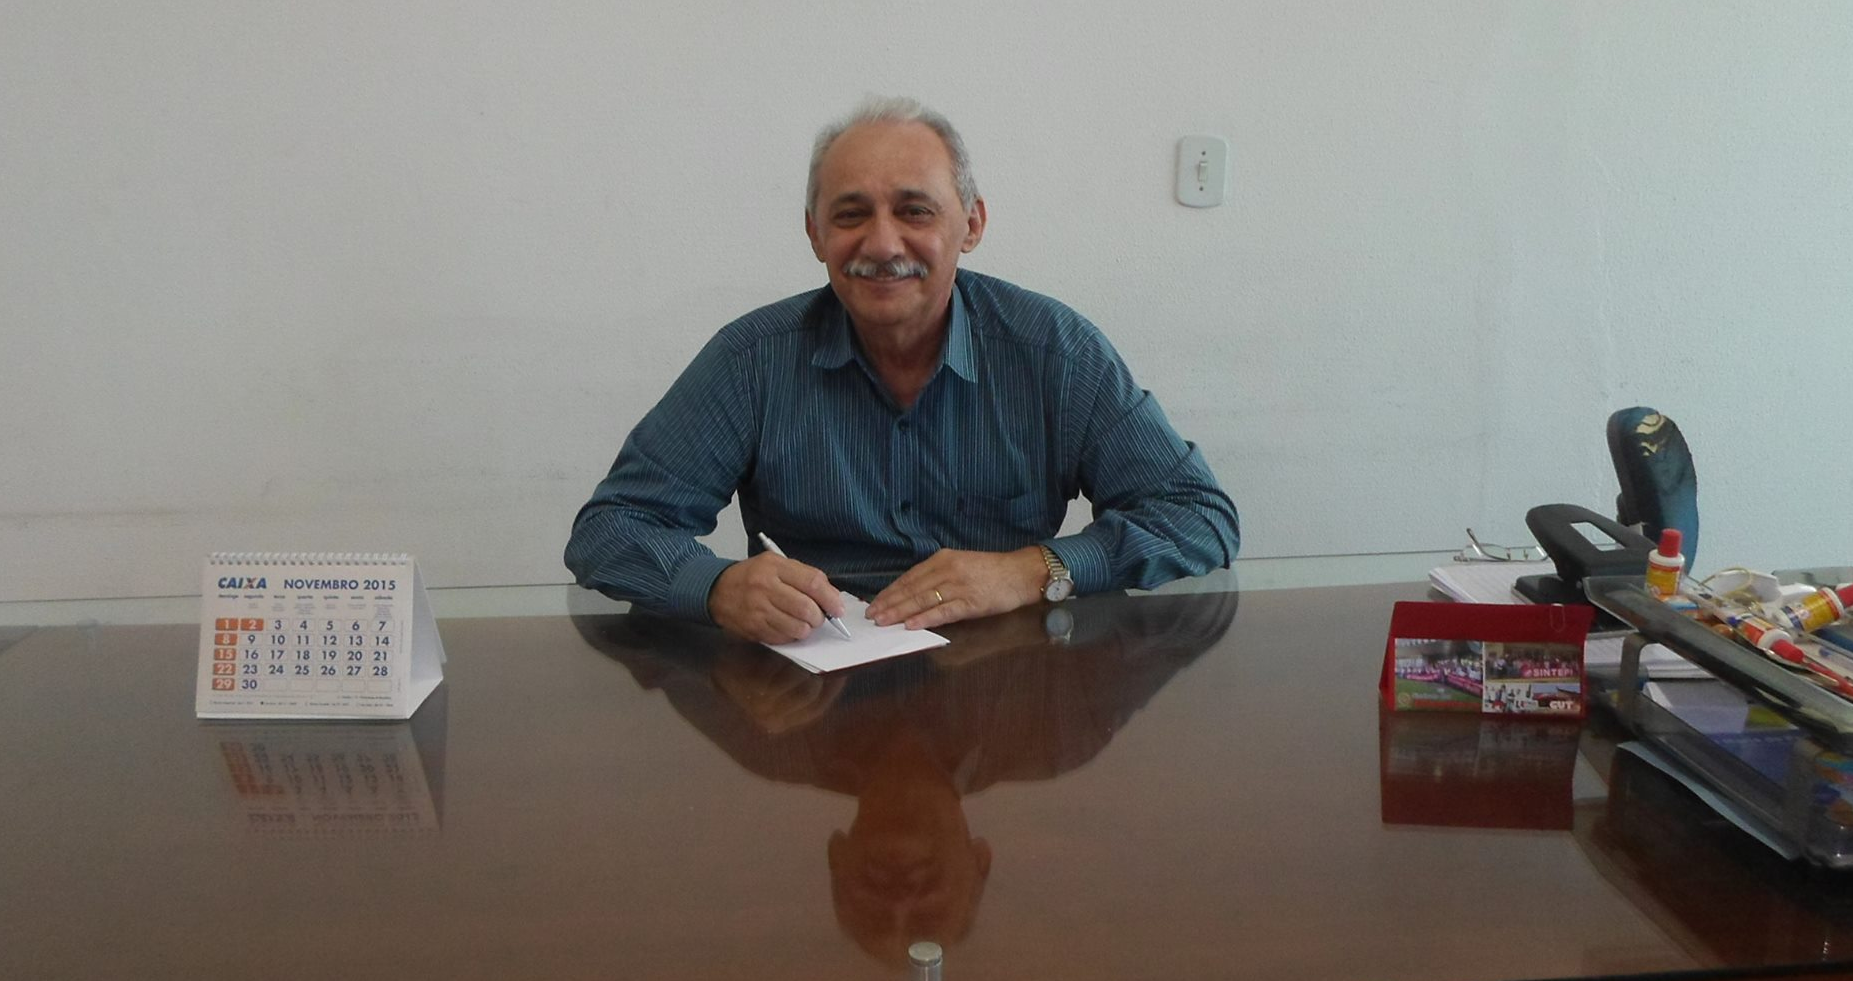 Professor Pedro Rodrigues Magalhães